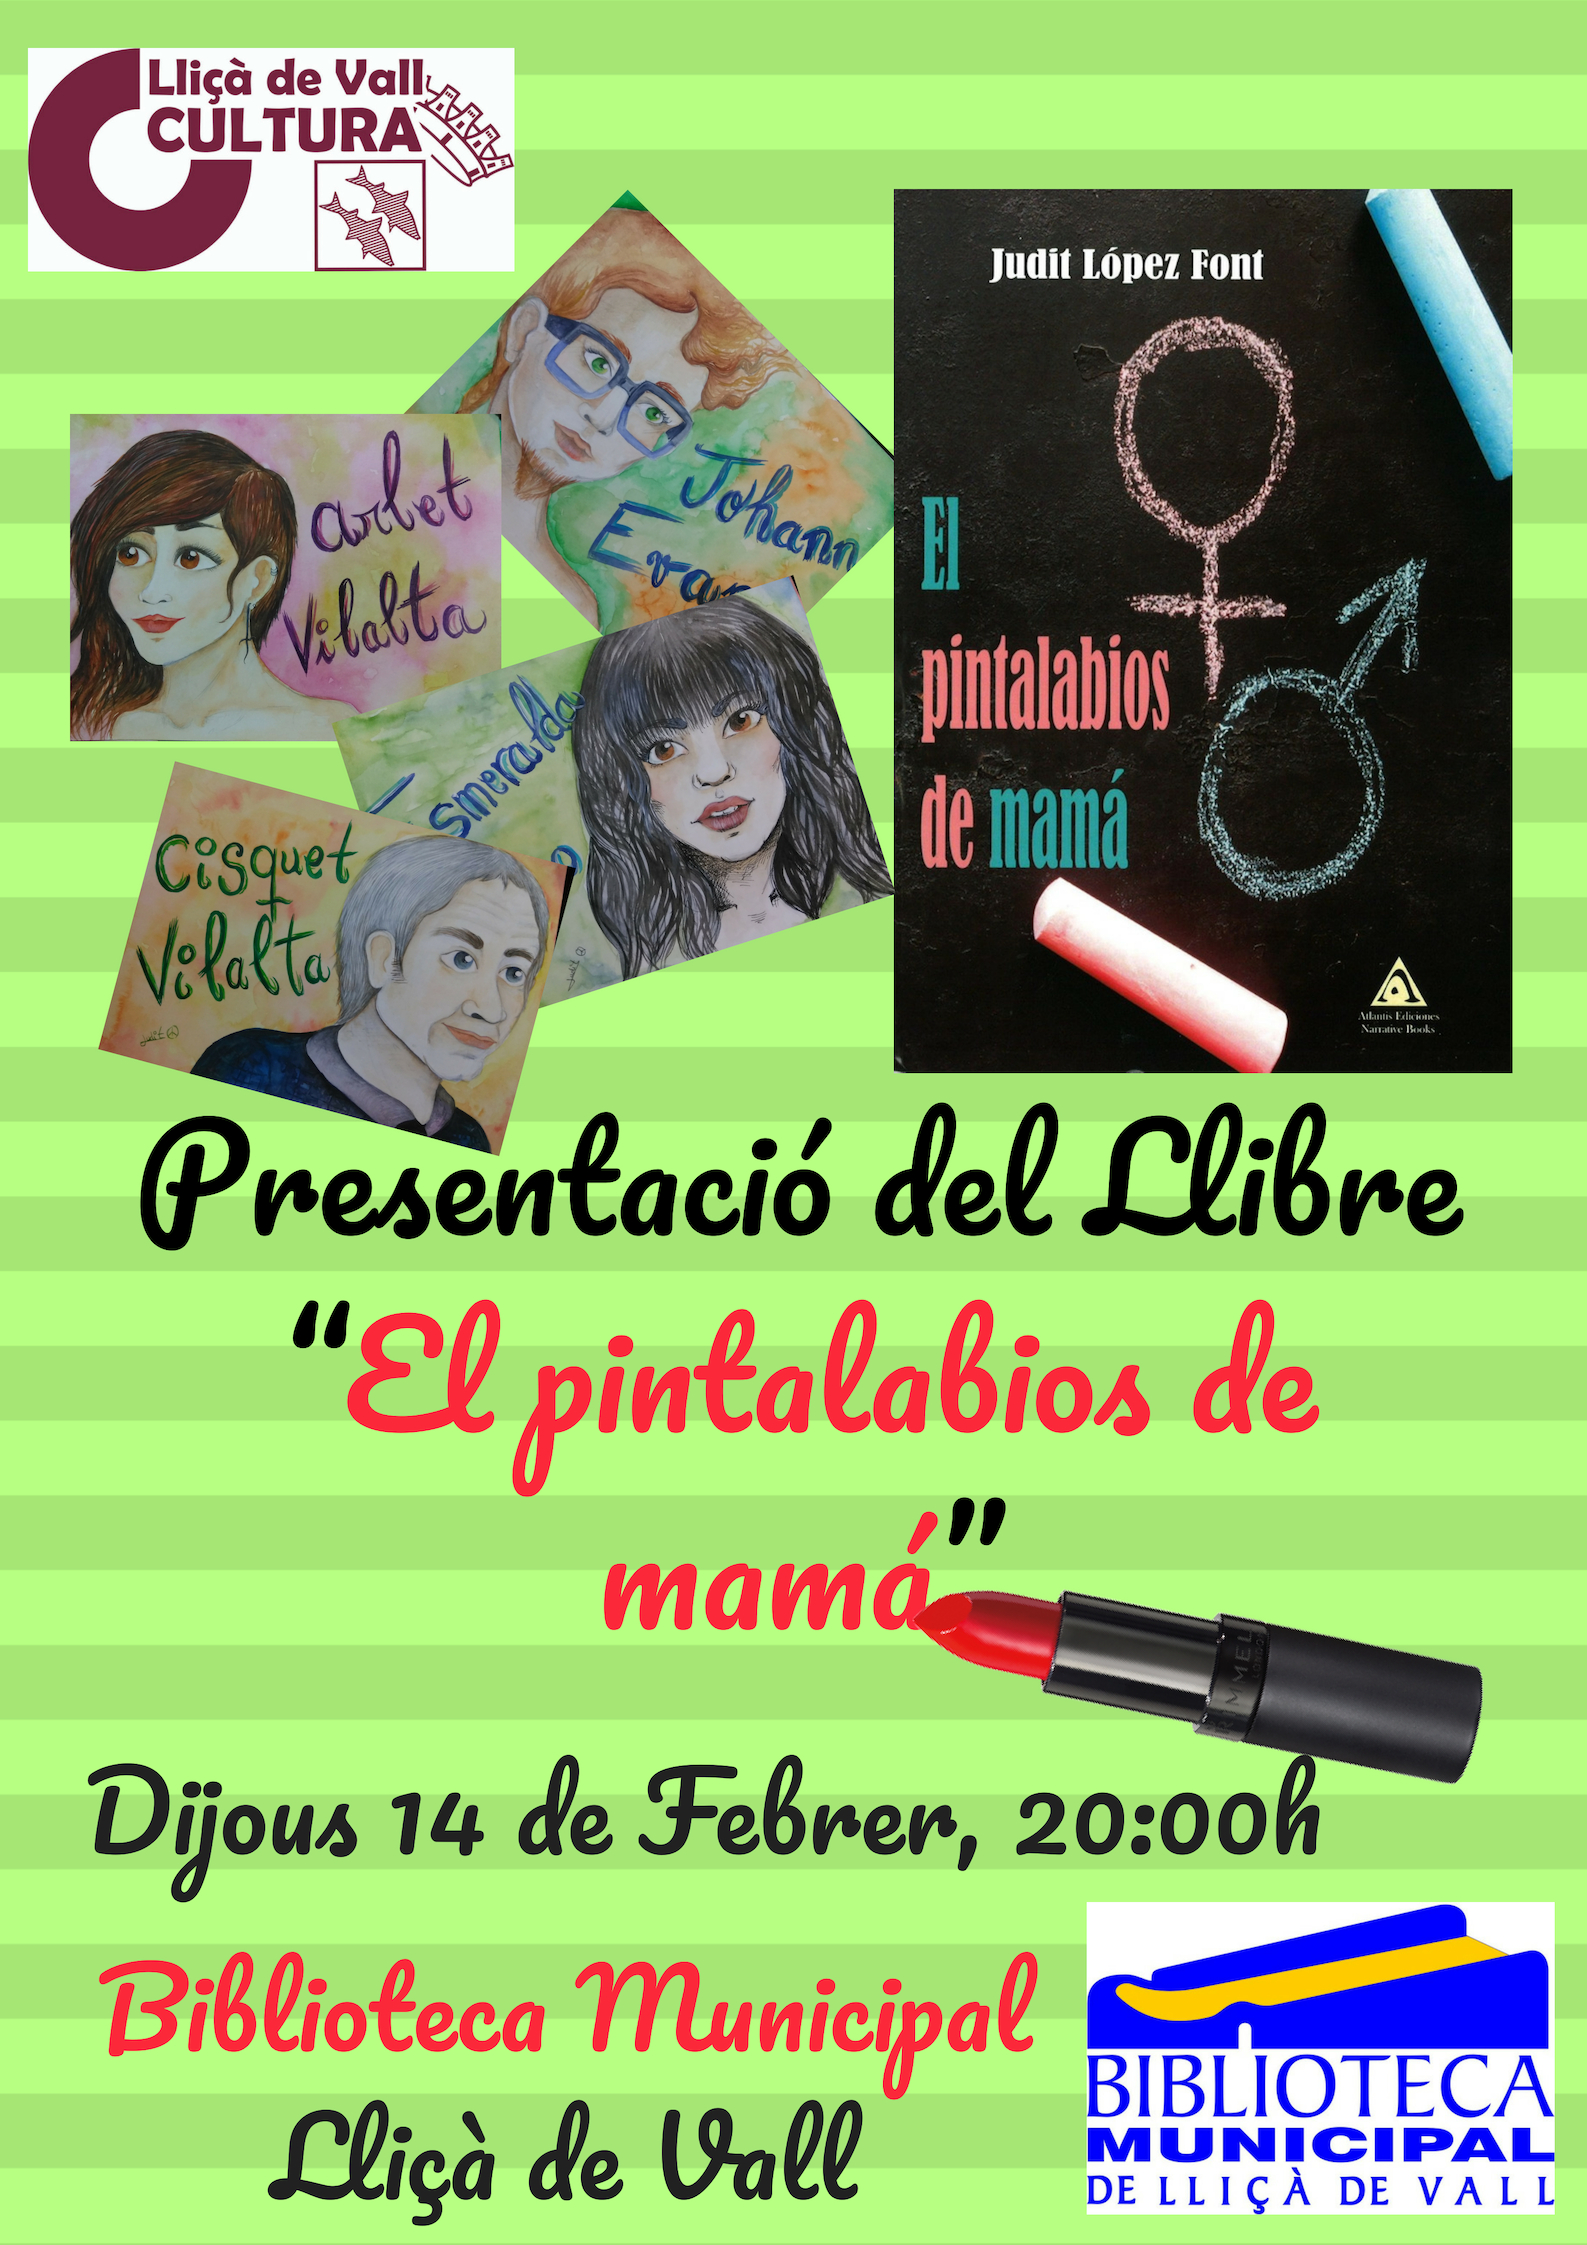 Anhang Presentacioě del Llibre “El pintalabios de mamaě”.jpg